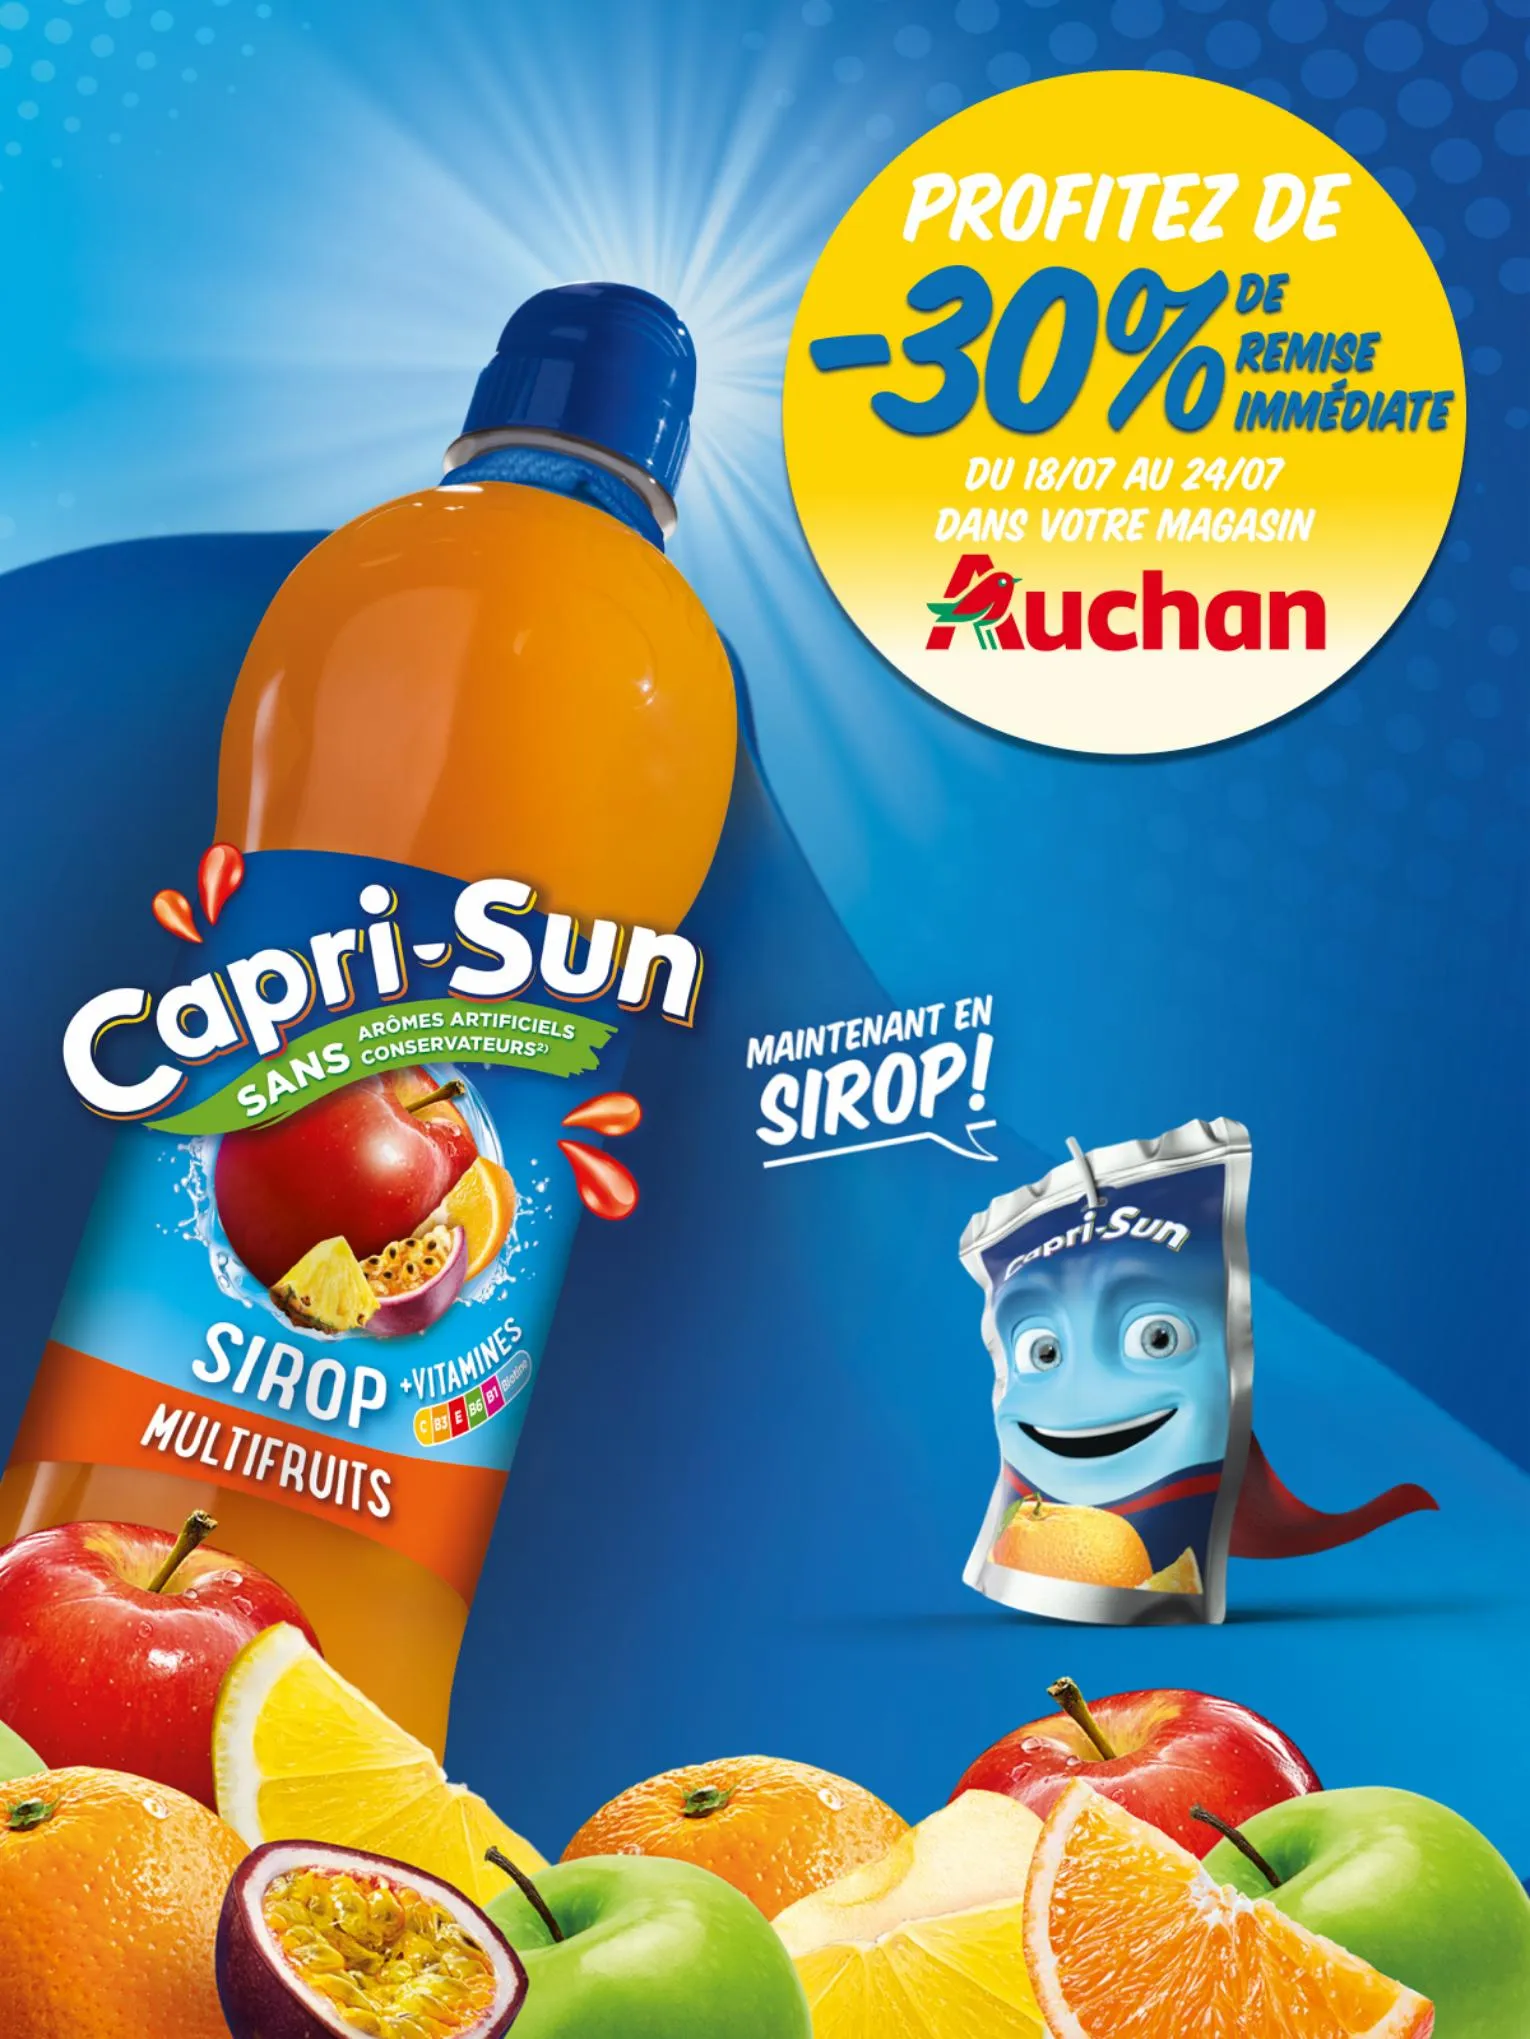 Catalogue Capri-Sun :-30% de remise immédiate dans votre magasin Auchan, page 00004